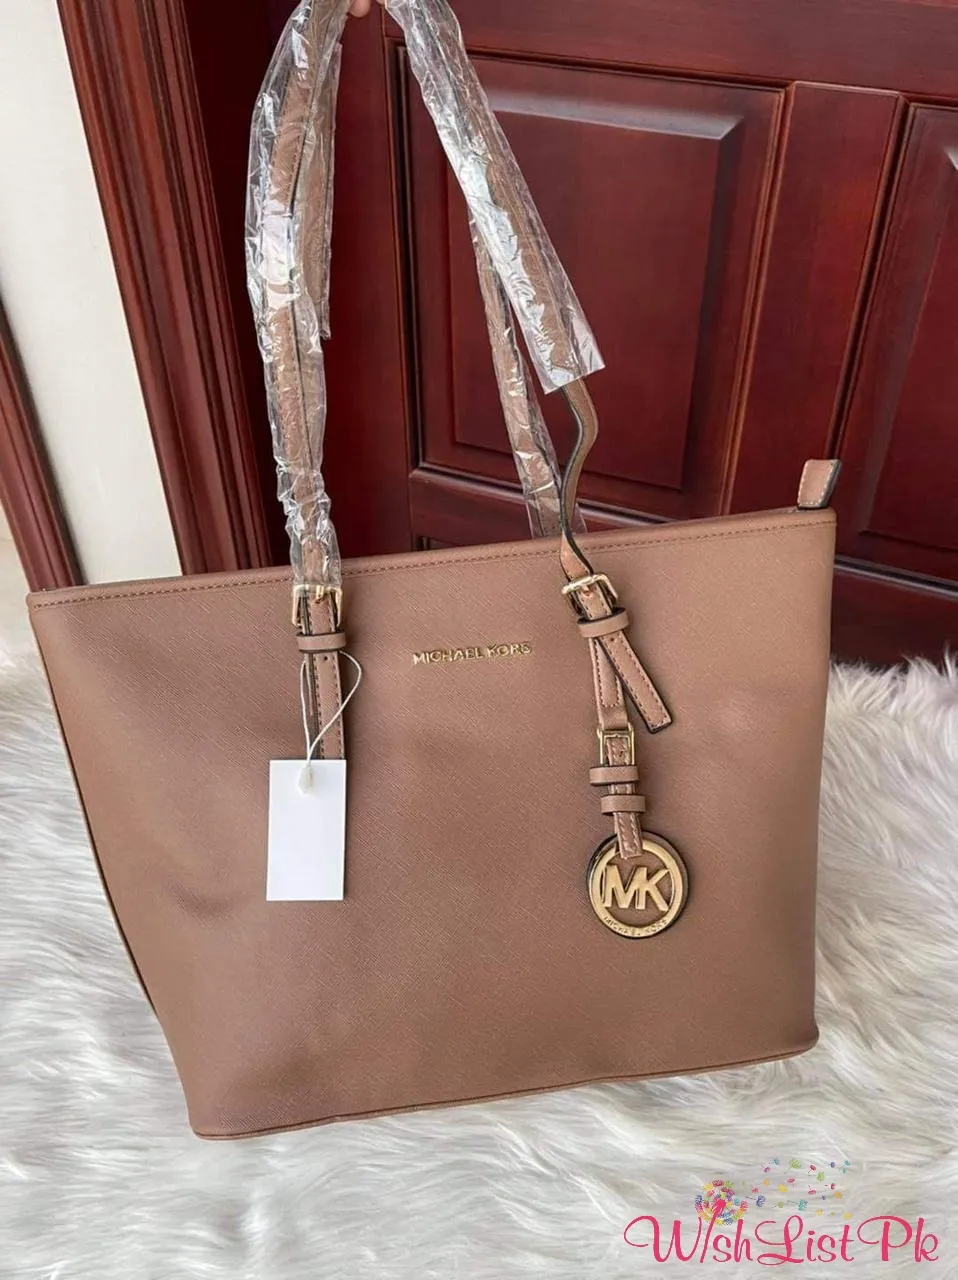 mk tote bag original price